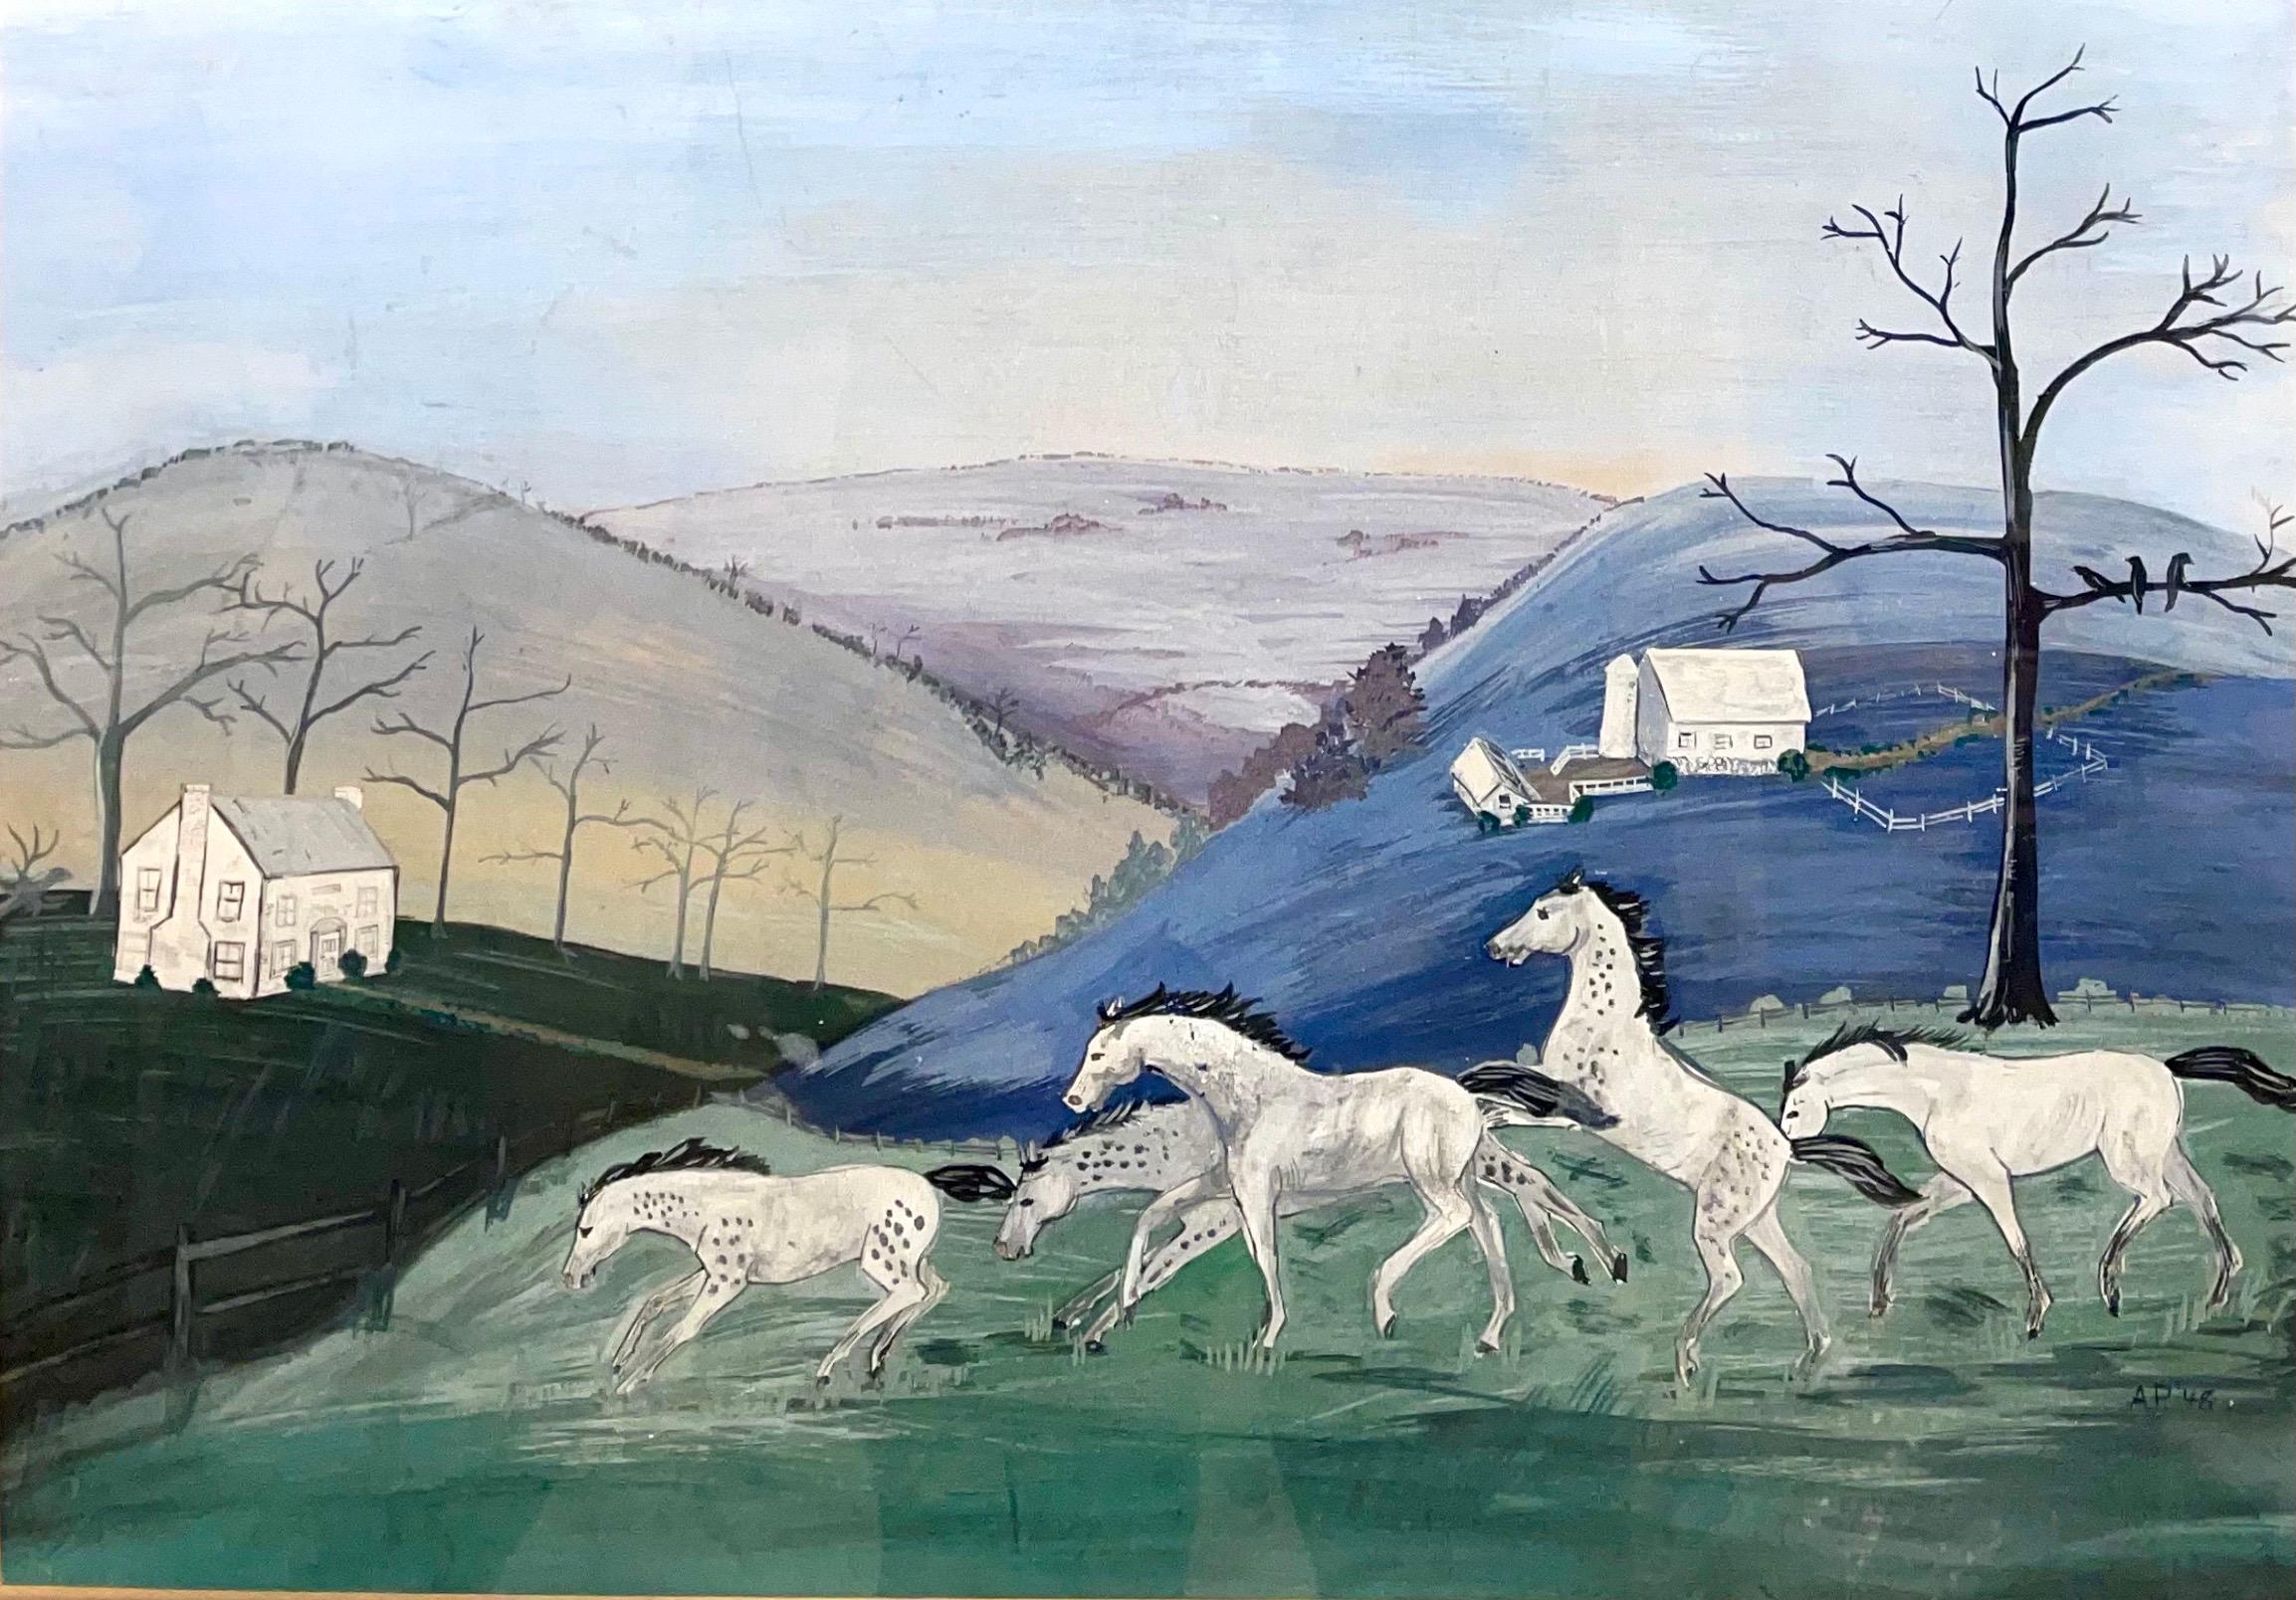 Cecilia "Peach" Taylor Animal Painting – 1948 amerikanische Volkskunst Aquarell, Gouache, Malerei Pferd auf Bauernhof, Reiter auf Pferden